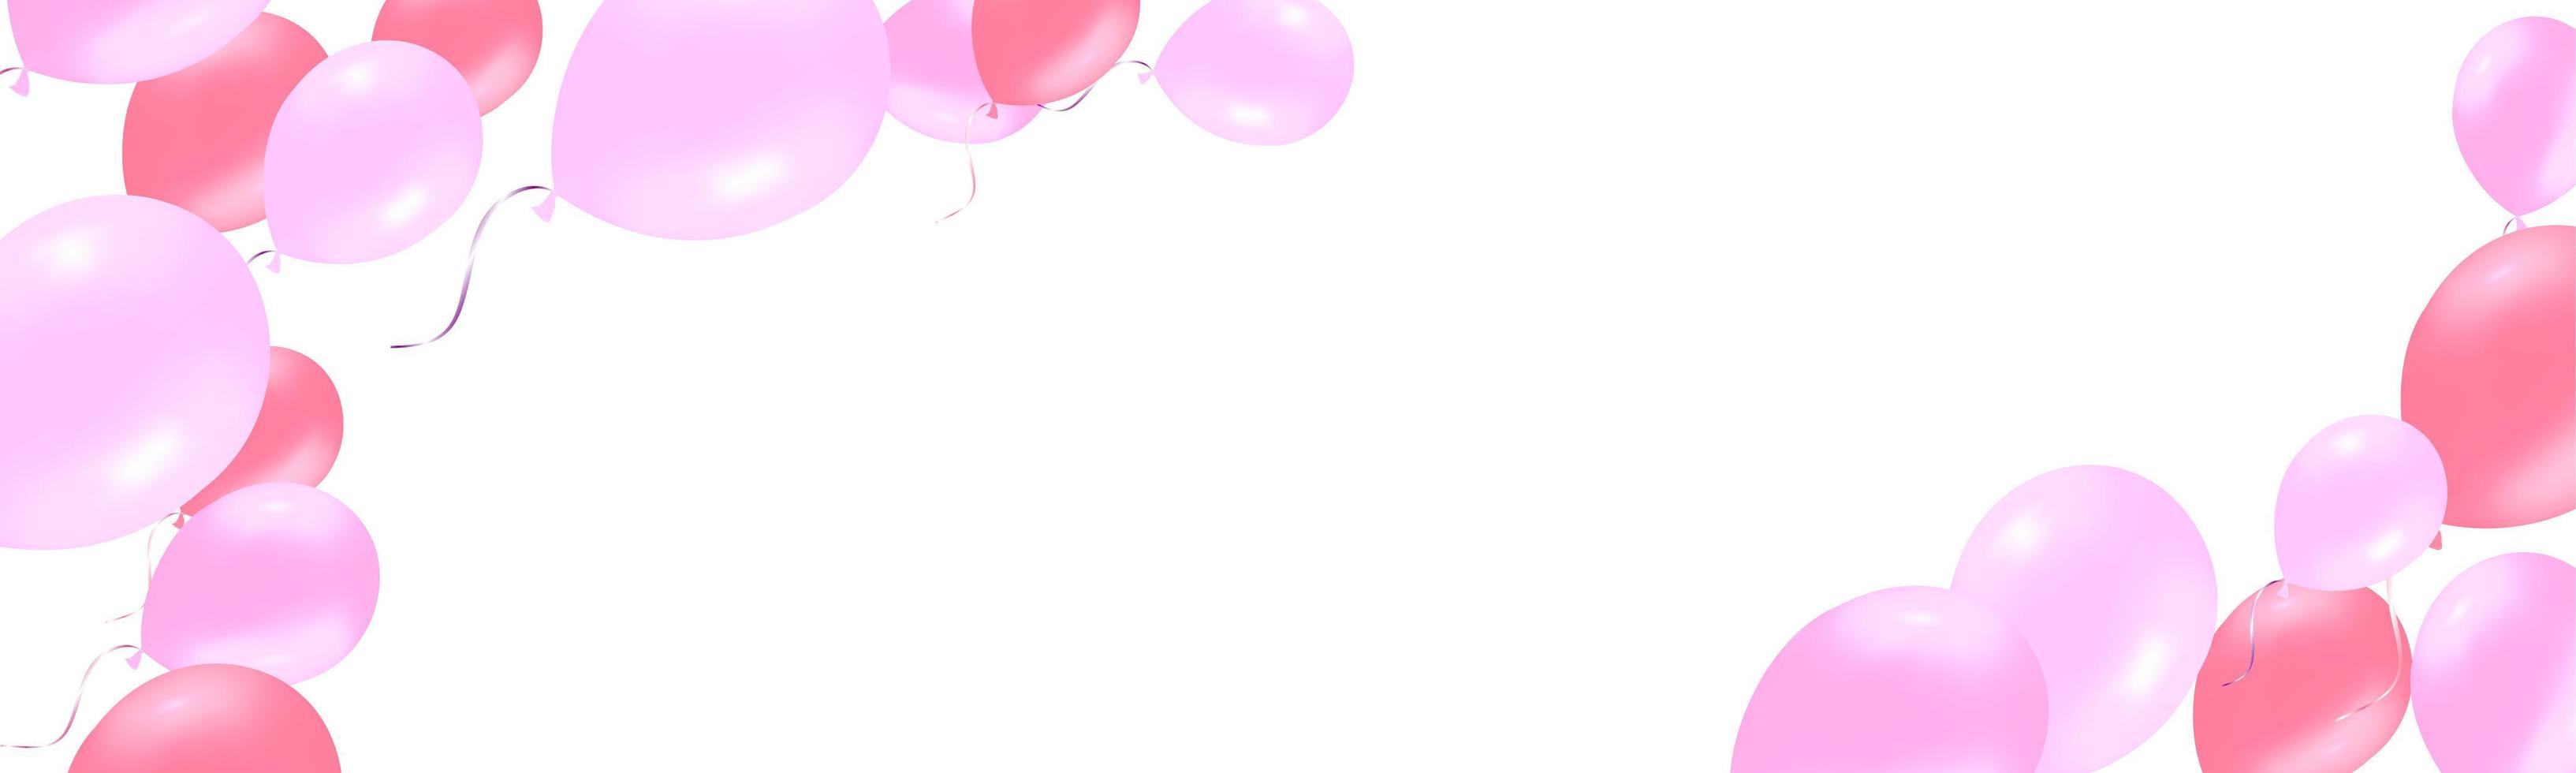 horizontale banner met roze roze heliumballonnen vector